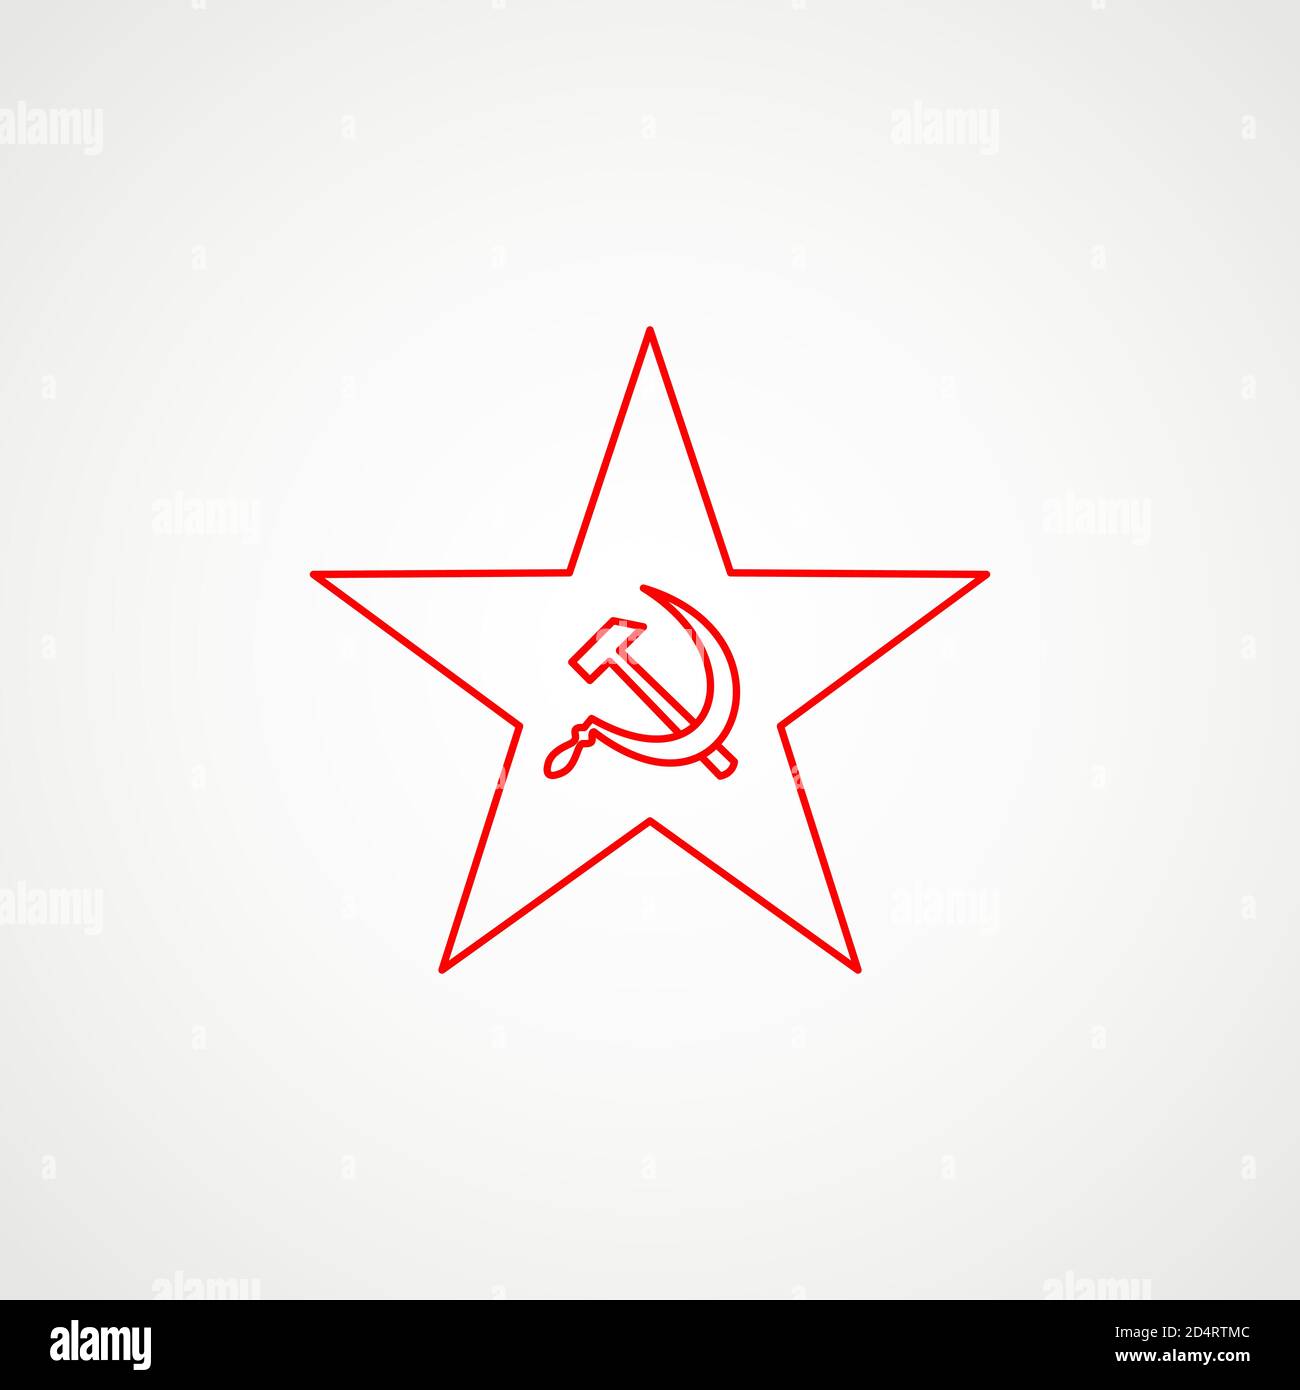 Lineare Ikone des Kommunismus. Hammer, Sichel in den Stern. Rotes sowjetisches Emblem. Minimalistisches Wappen der UdSSR. Vektor Stock Vektor